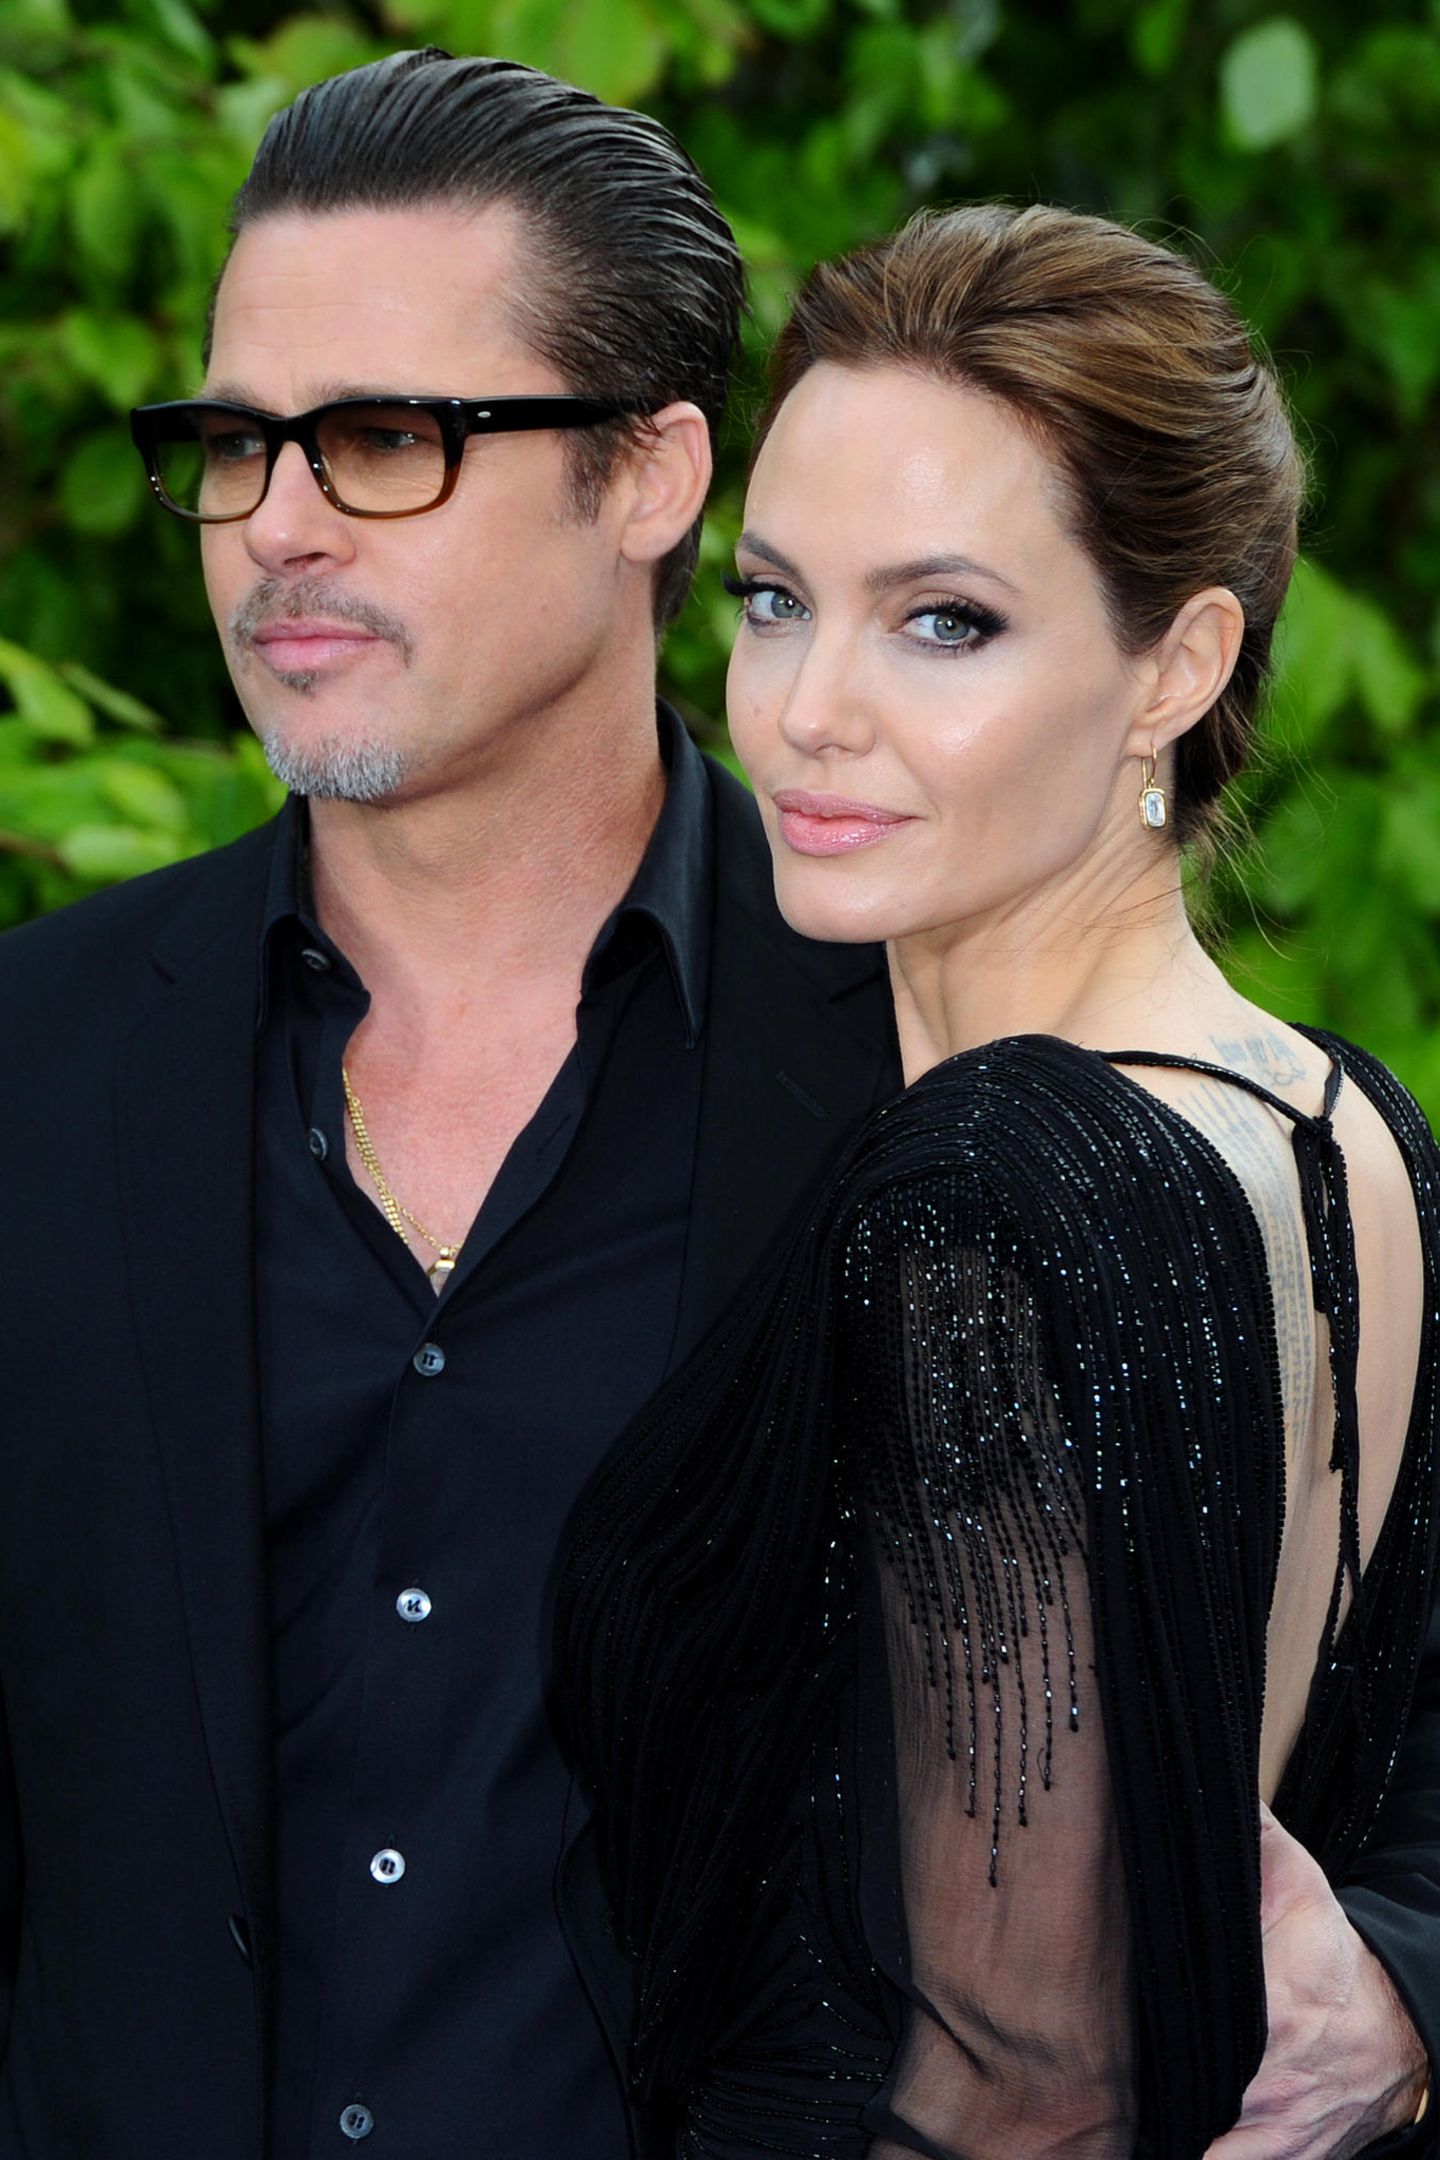 Auch wenn Angelina Jolie und Brad Pitt 2016 die Scheidung eingereicht haben, haben sie auch rund 13 glückliche Jahre miteinander verbracht. Das lag auch daran, dass die zwei Schauspieler sich gegenseitig Freiheiten ließen. Jolie sagte gegenüber "Das Neue": "Ich bezweifle, dass Treue für eine Beziehung absolut notwendig ist." Stattdessen wollten sie sich nie aneinander ketten. Ob ihnen die Beziehung durch die Hochzeit im Jahr 2014 doch zu eng wurde? 